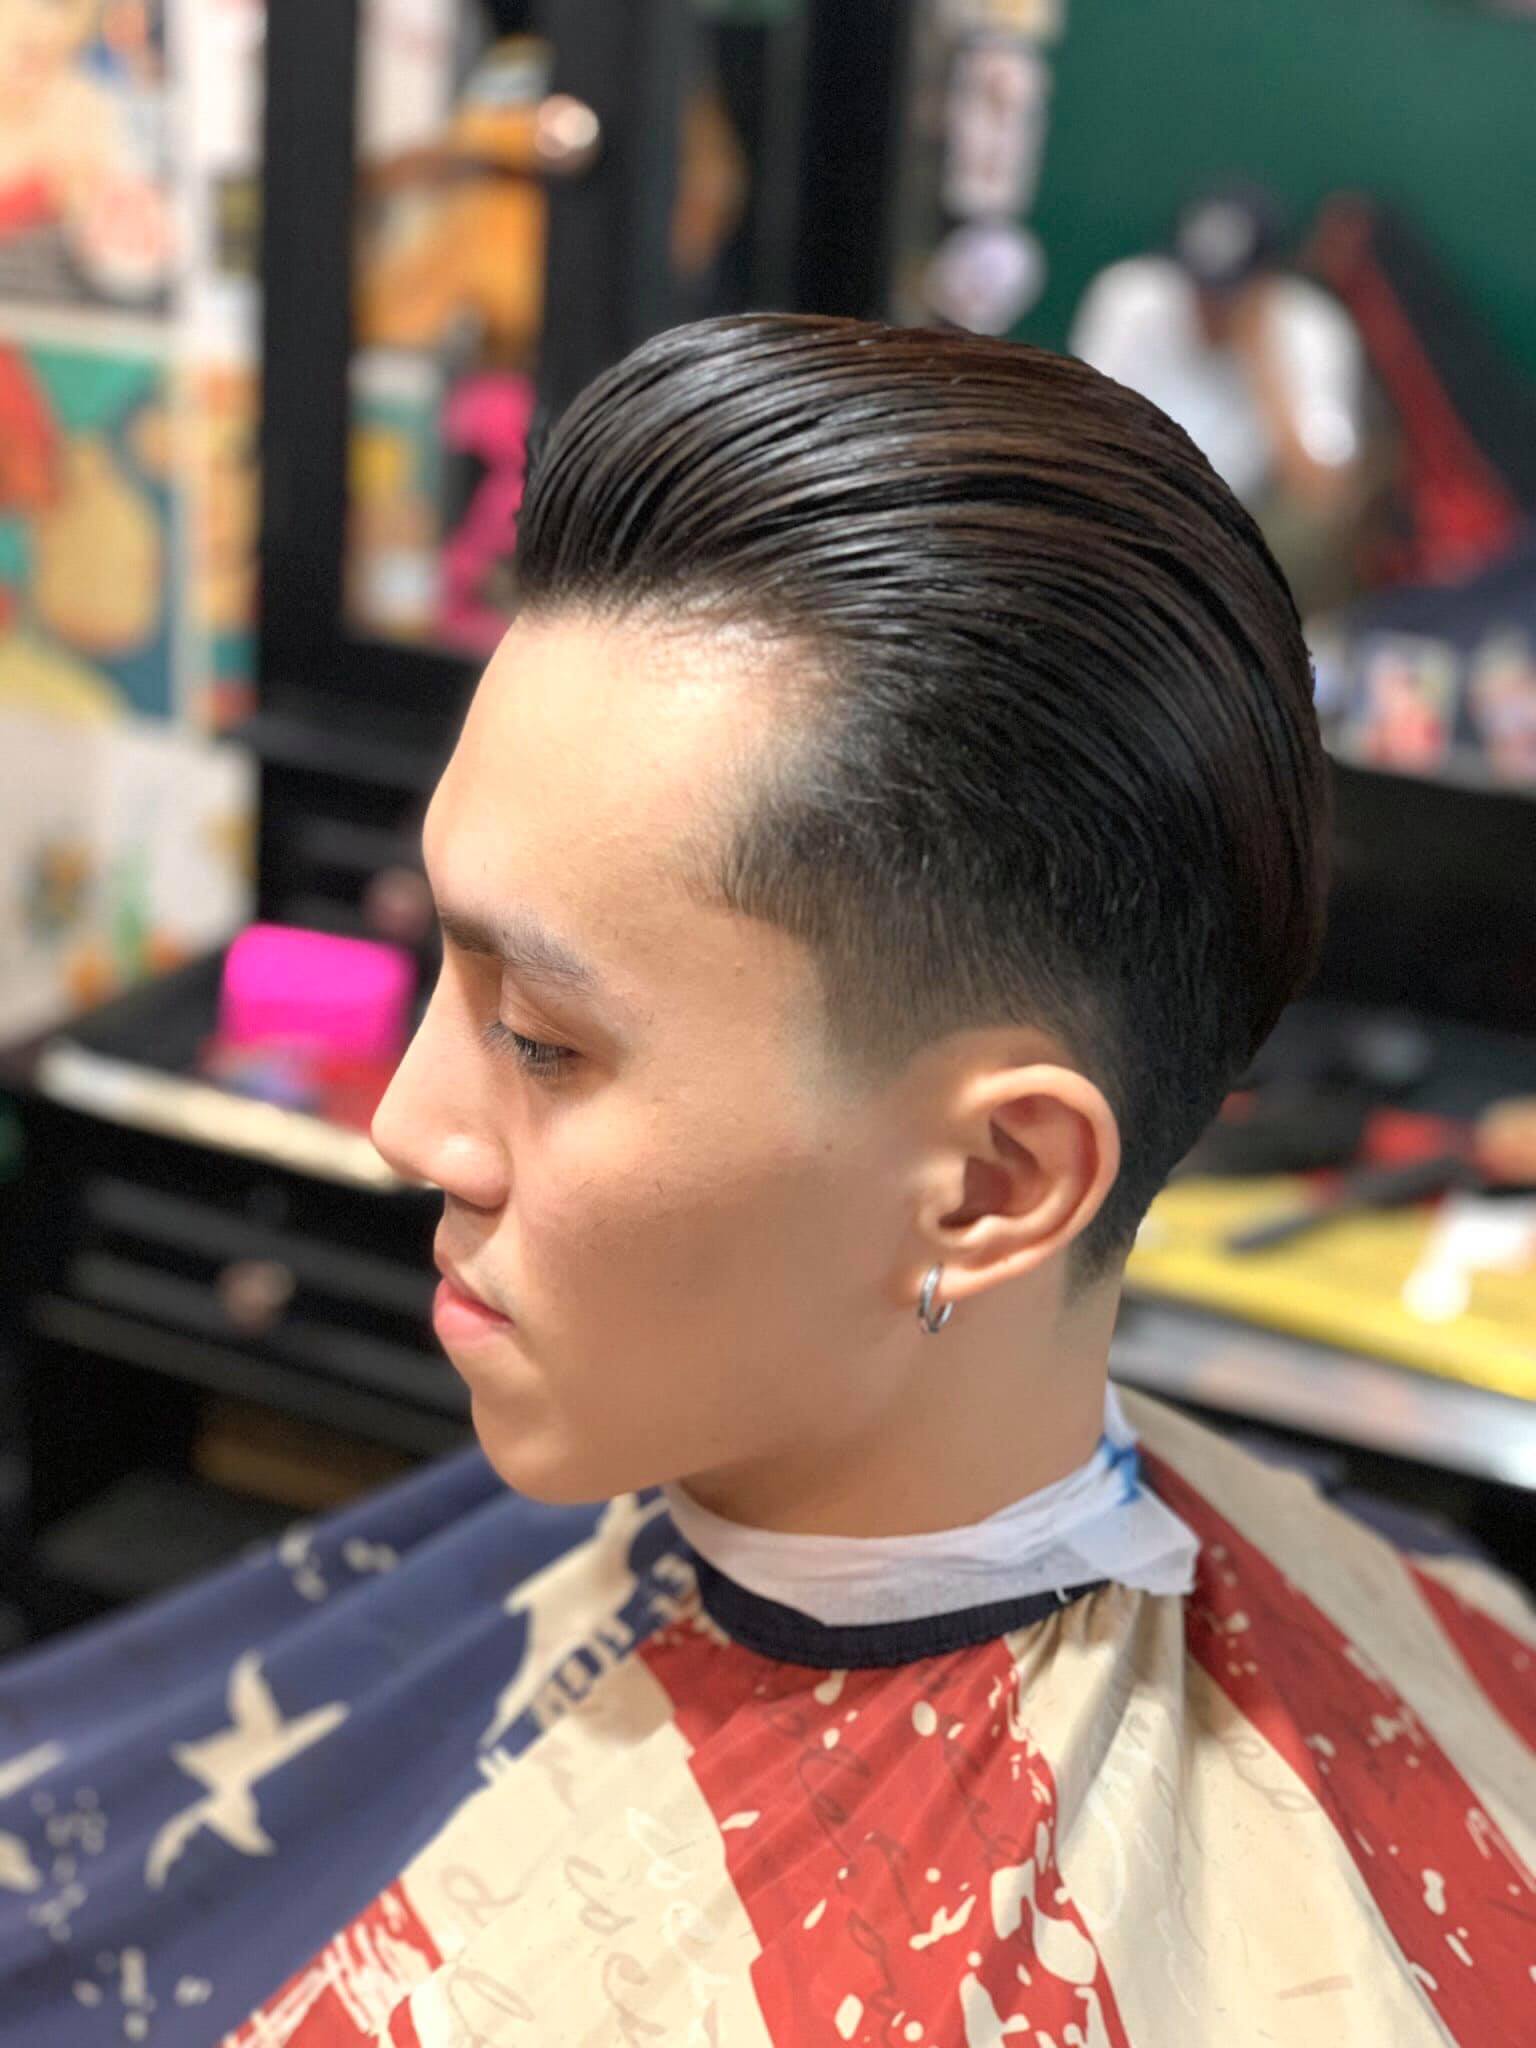 Salon Tài Hàn Quốc  nơi cắt tóc nam sóc trăng uy tín  uốn tóc nam  Korea  Salon Tài Hàn Quốc  nơi cắt tóc nam sóc trăng uy tín 